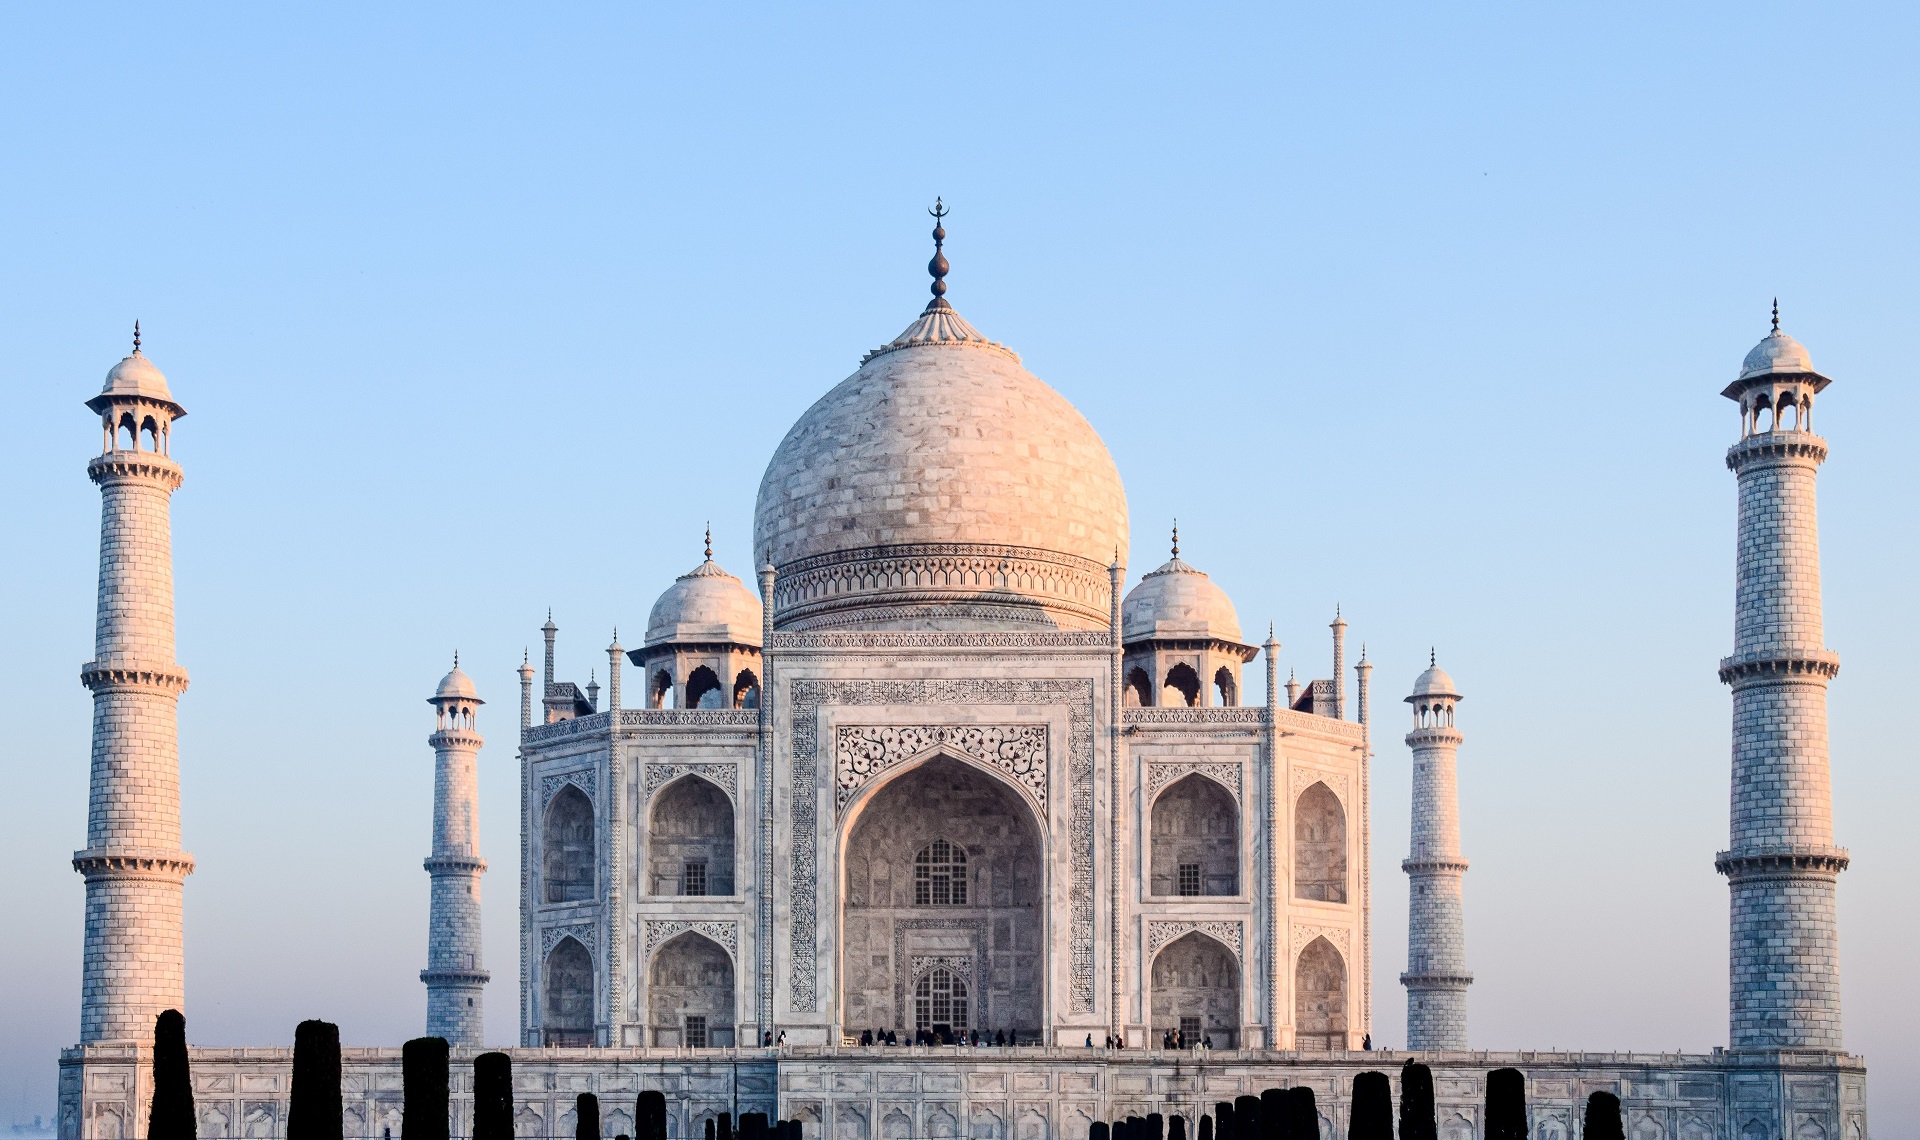 Visitare il Taj Mahal: i consigli per una delle sette meraviglie del mondo